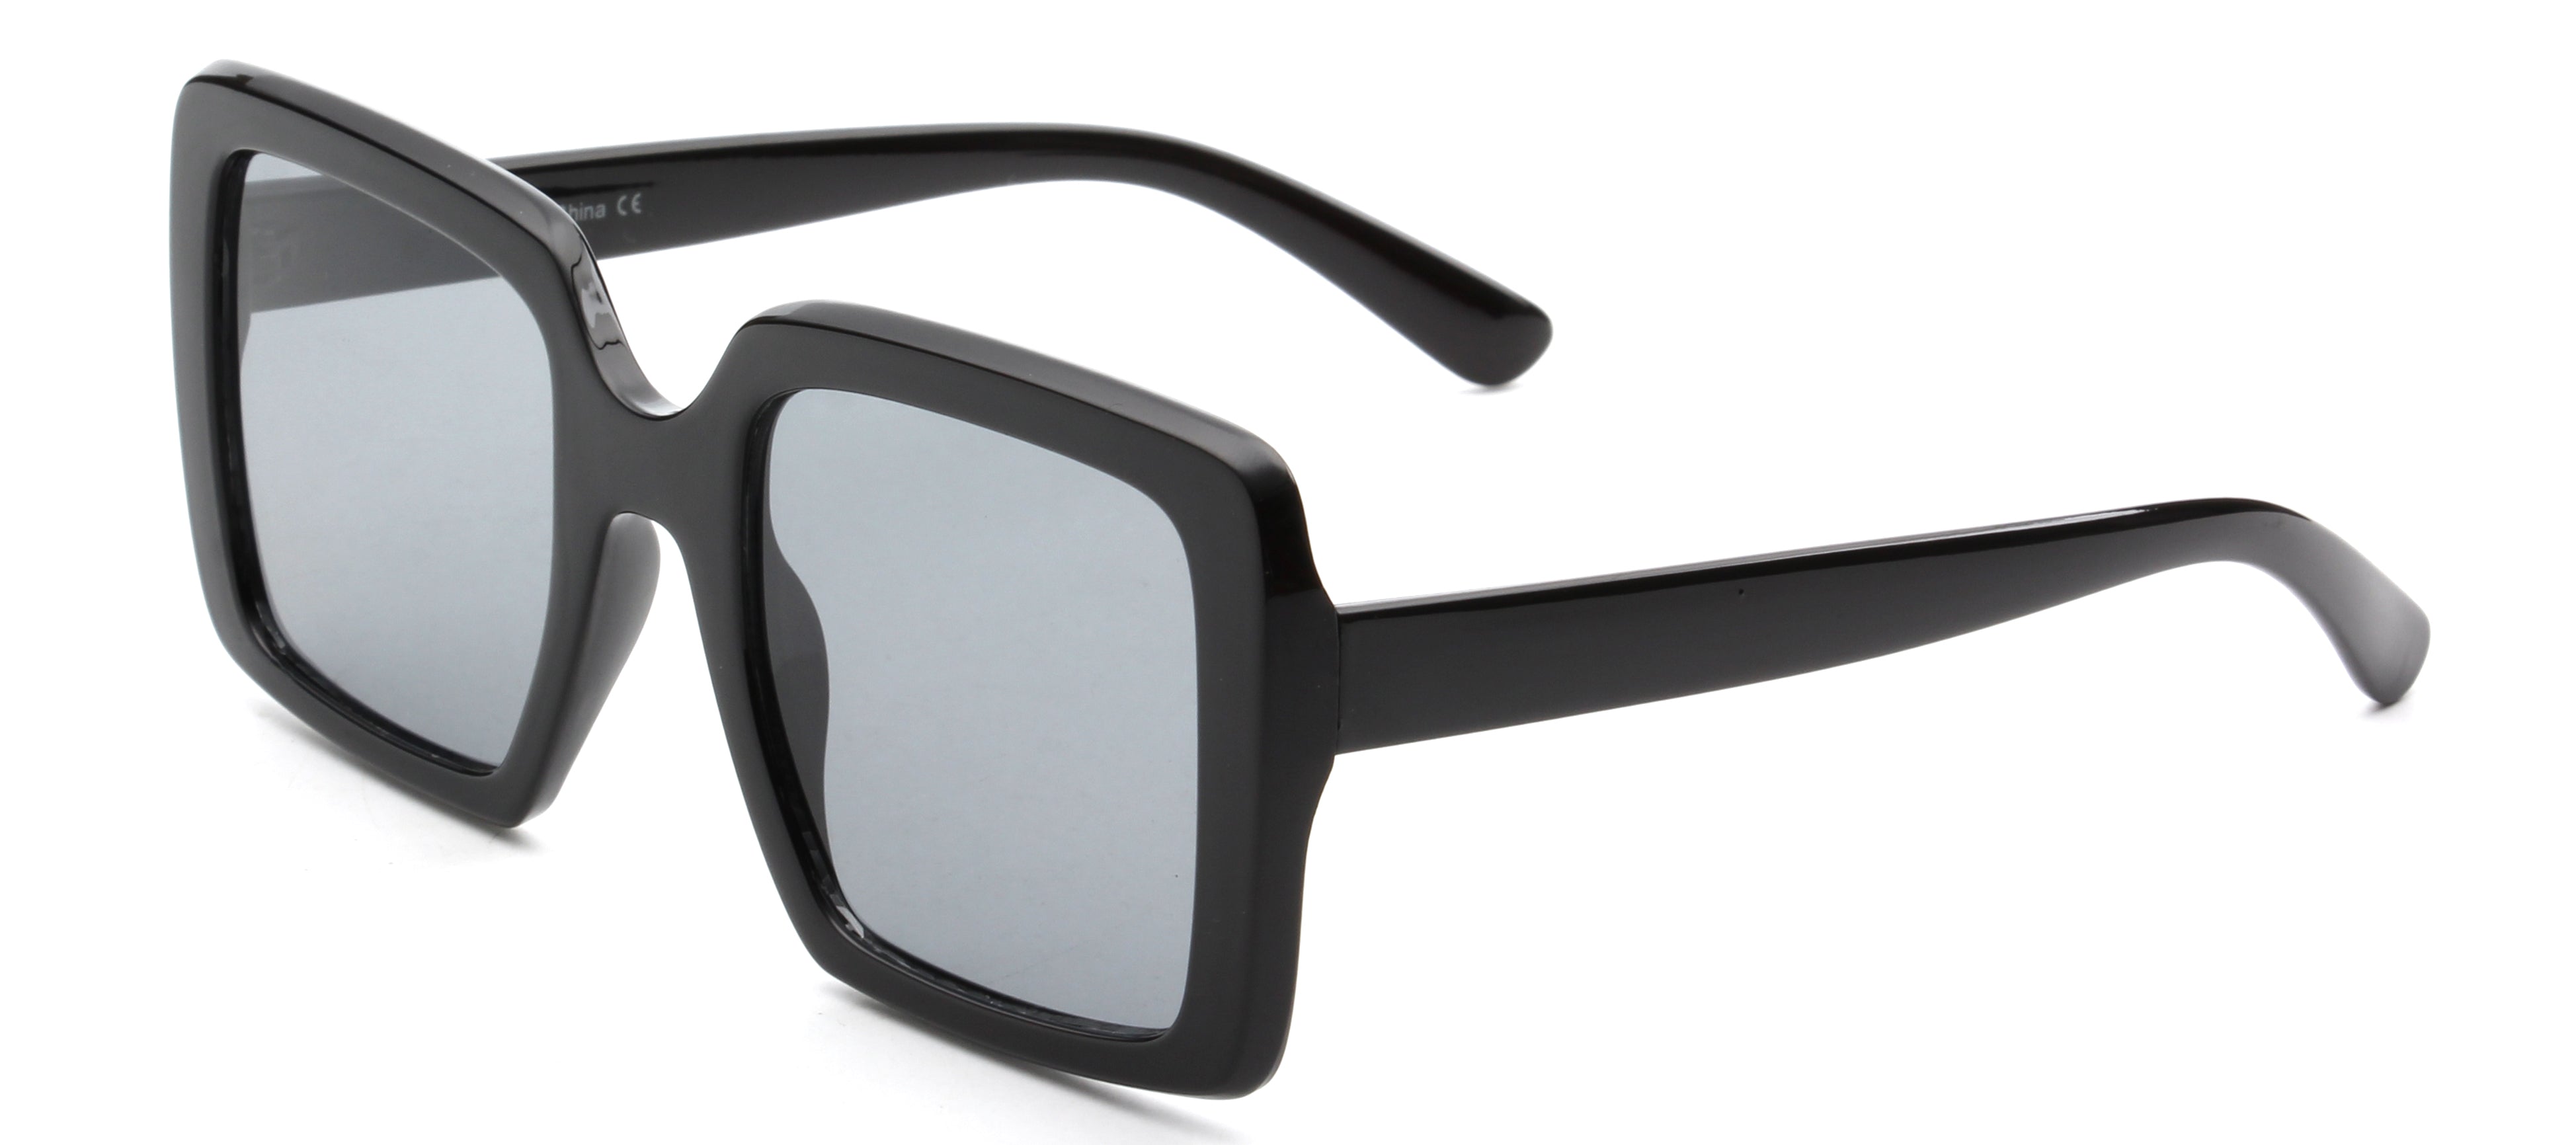 S1093 - Retro Square Oversize Women Fashion Sunglasses Gray